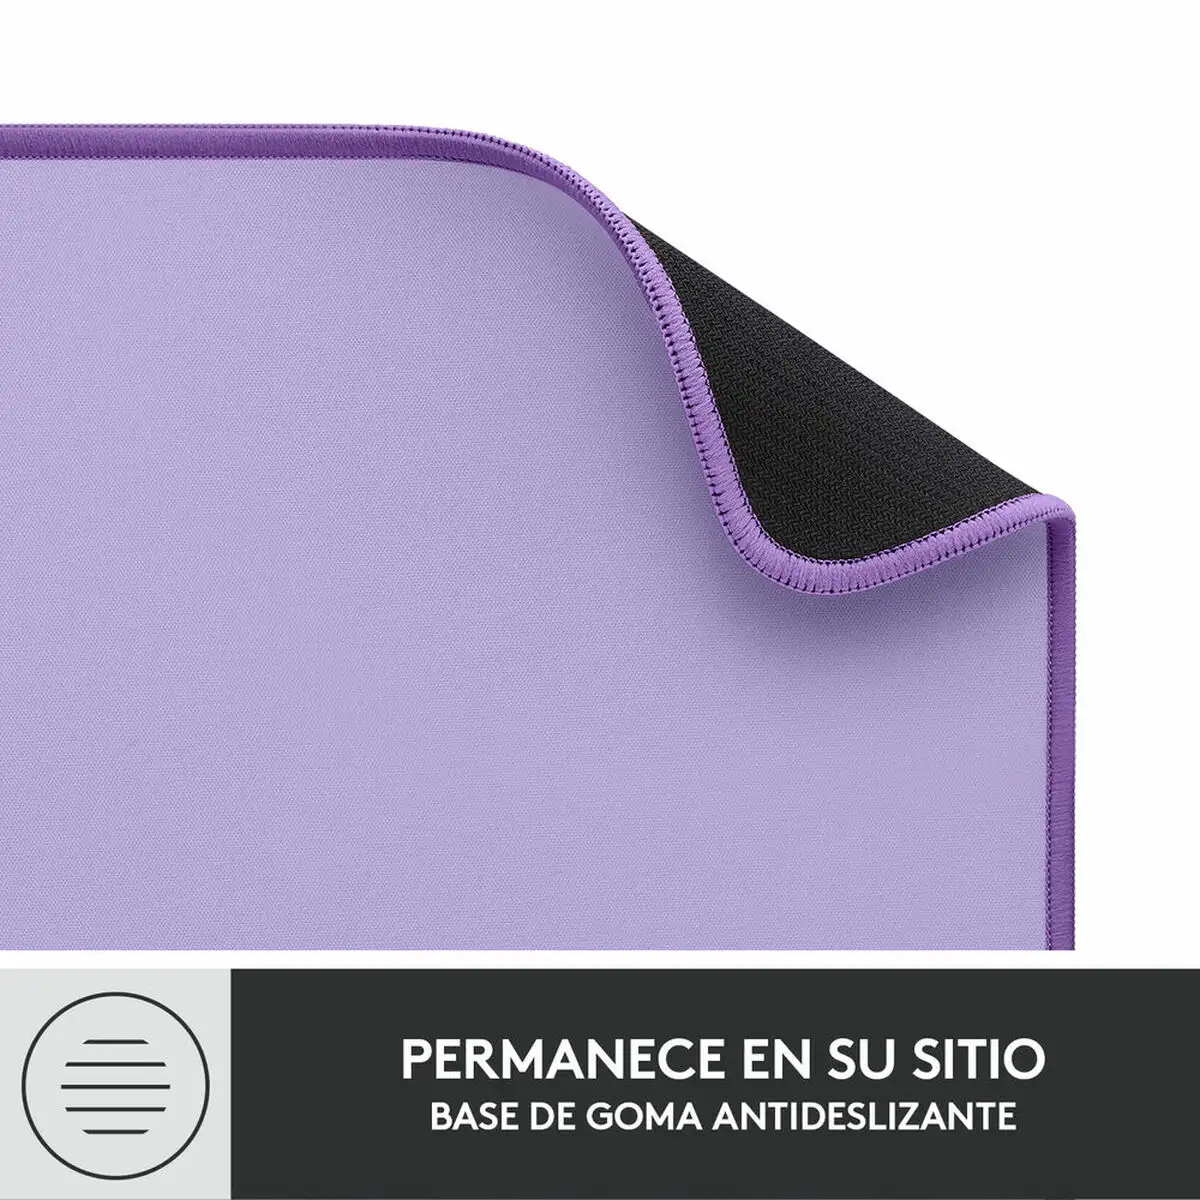 Tapis logitech desk mat studio series violet pourpre_8274. Bienvenue chez DIAYTAR SENEGAL - Où Votre Shopping Prend Vie. Découvrez notre univers et dénichez des trésors qui ajoutent de la couleur à votre quotidien.